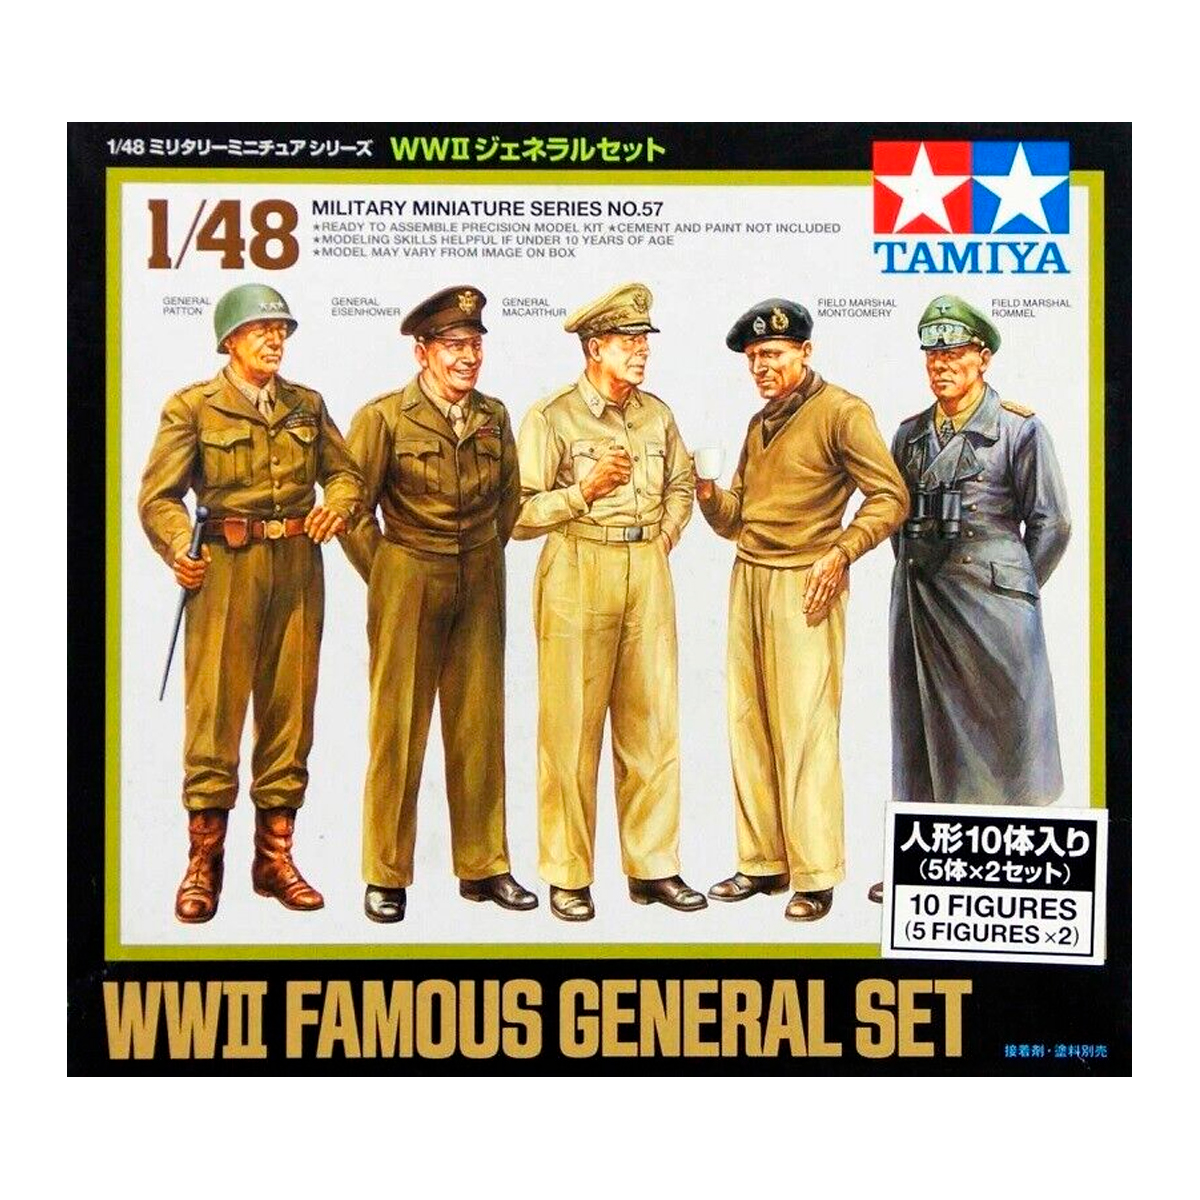 1/48 Famous General set